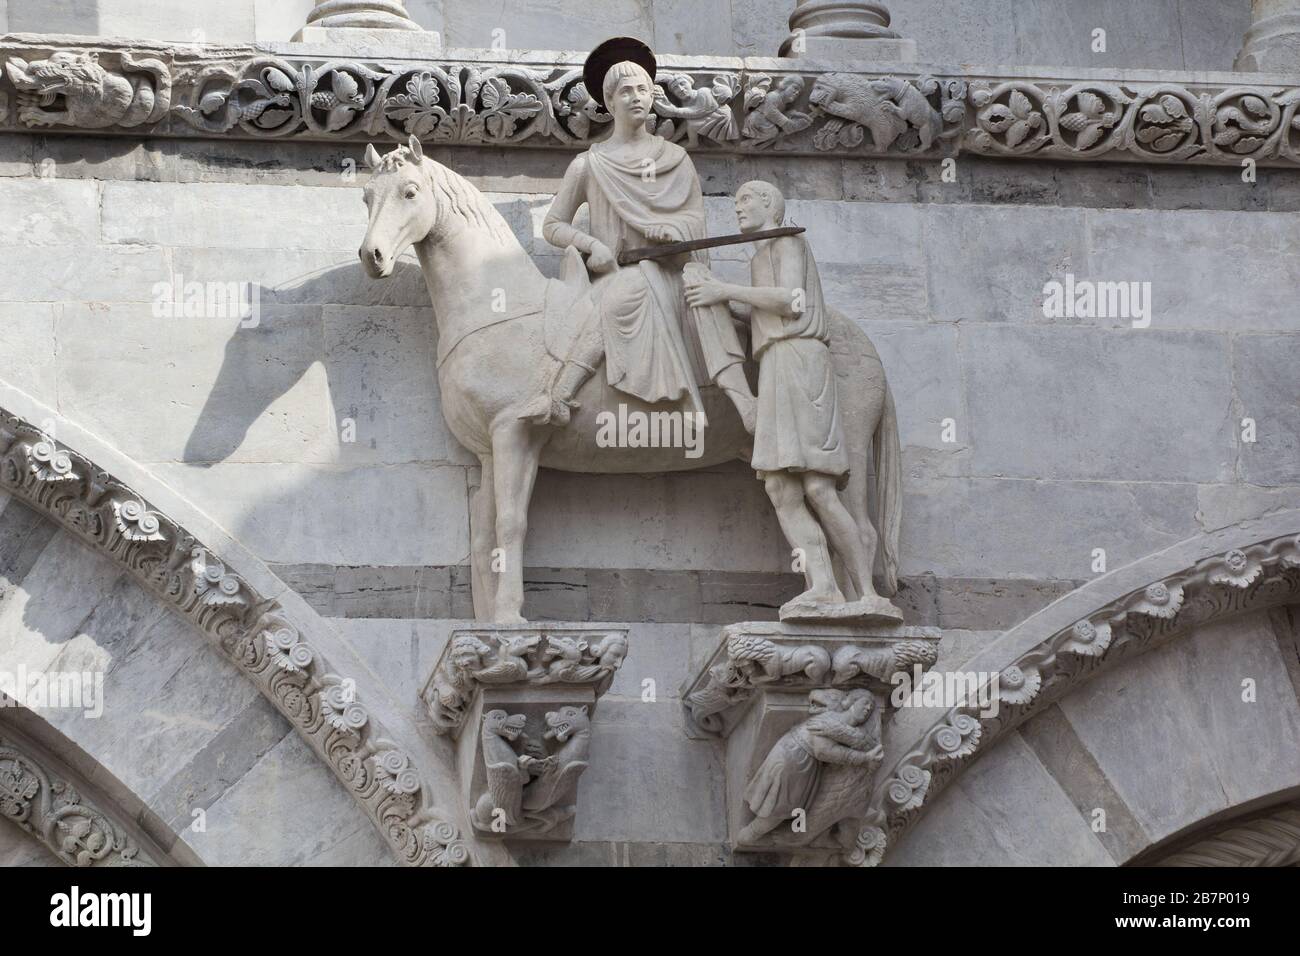 La estatua medieval de San Martín y el beggar en la fachada de la Catedral de Lucca, Toscana, Italia Foto de stock